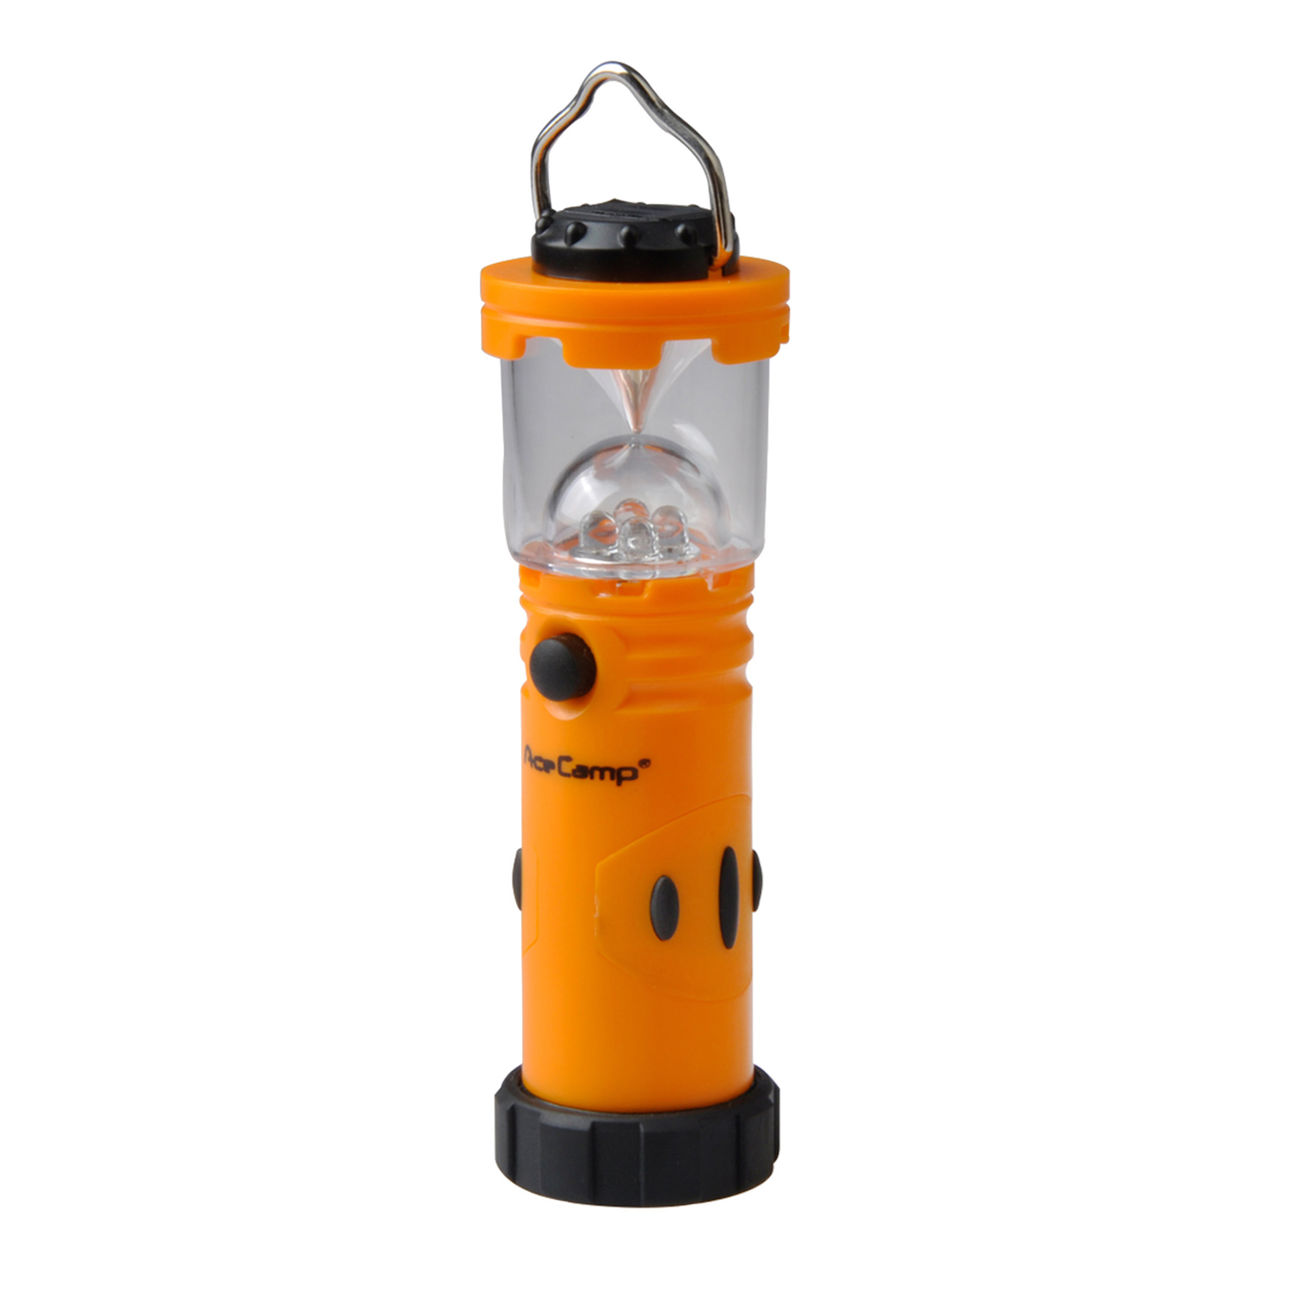 Ace Camp LED-Taschenlampe 20 Lumen orange/schwarz